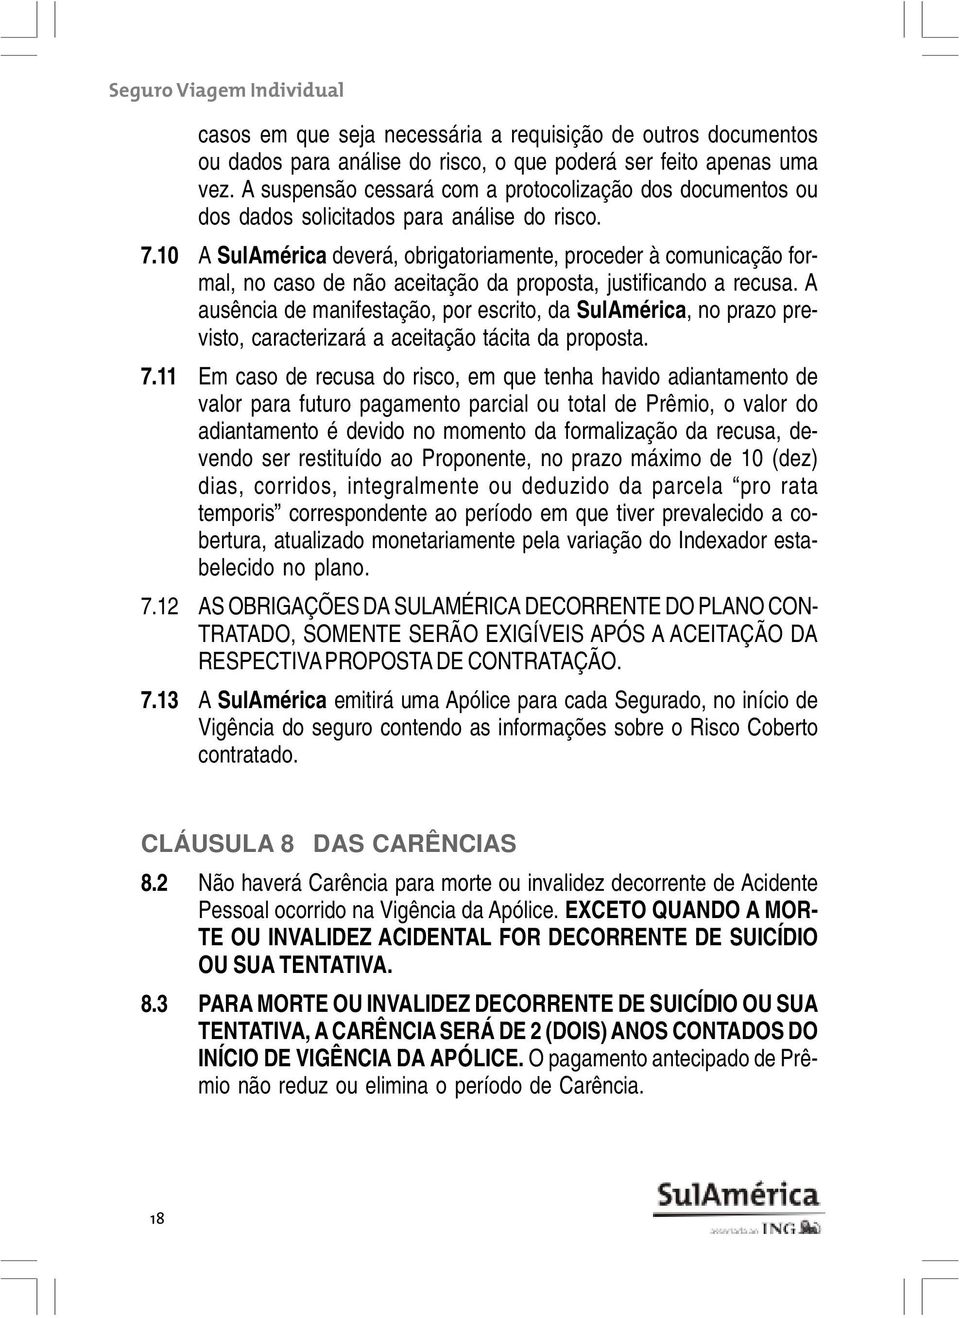 10 A SulAmérica deverá, obrigatoriamente, proceder à comunicação formal, no caso de não aceitação da proposta, justificando a recusa.